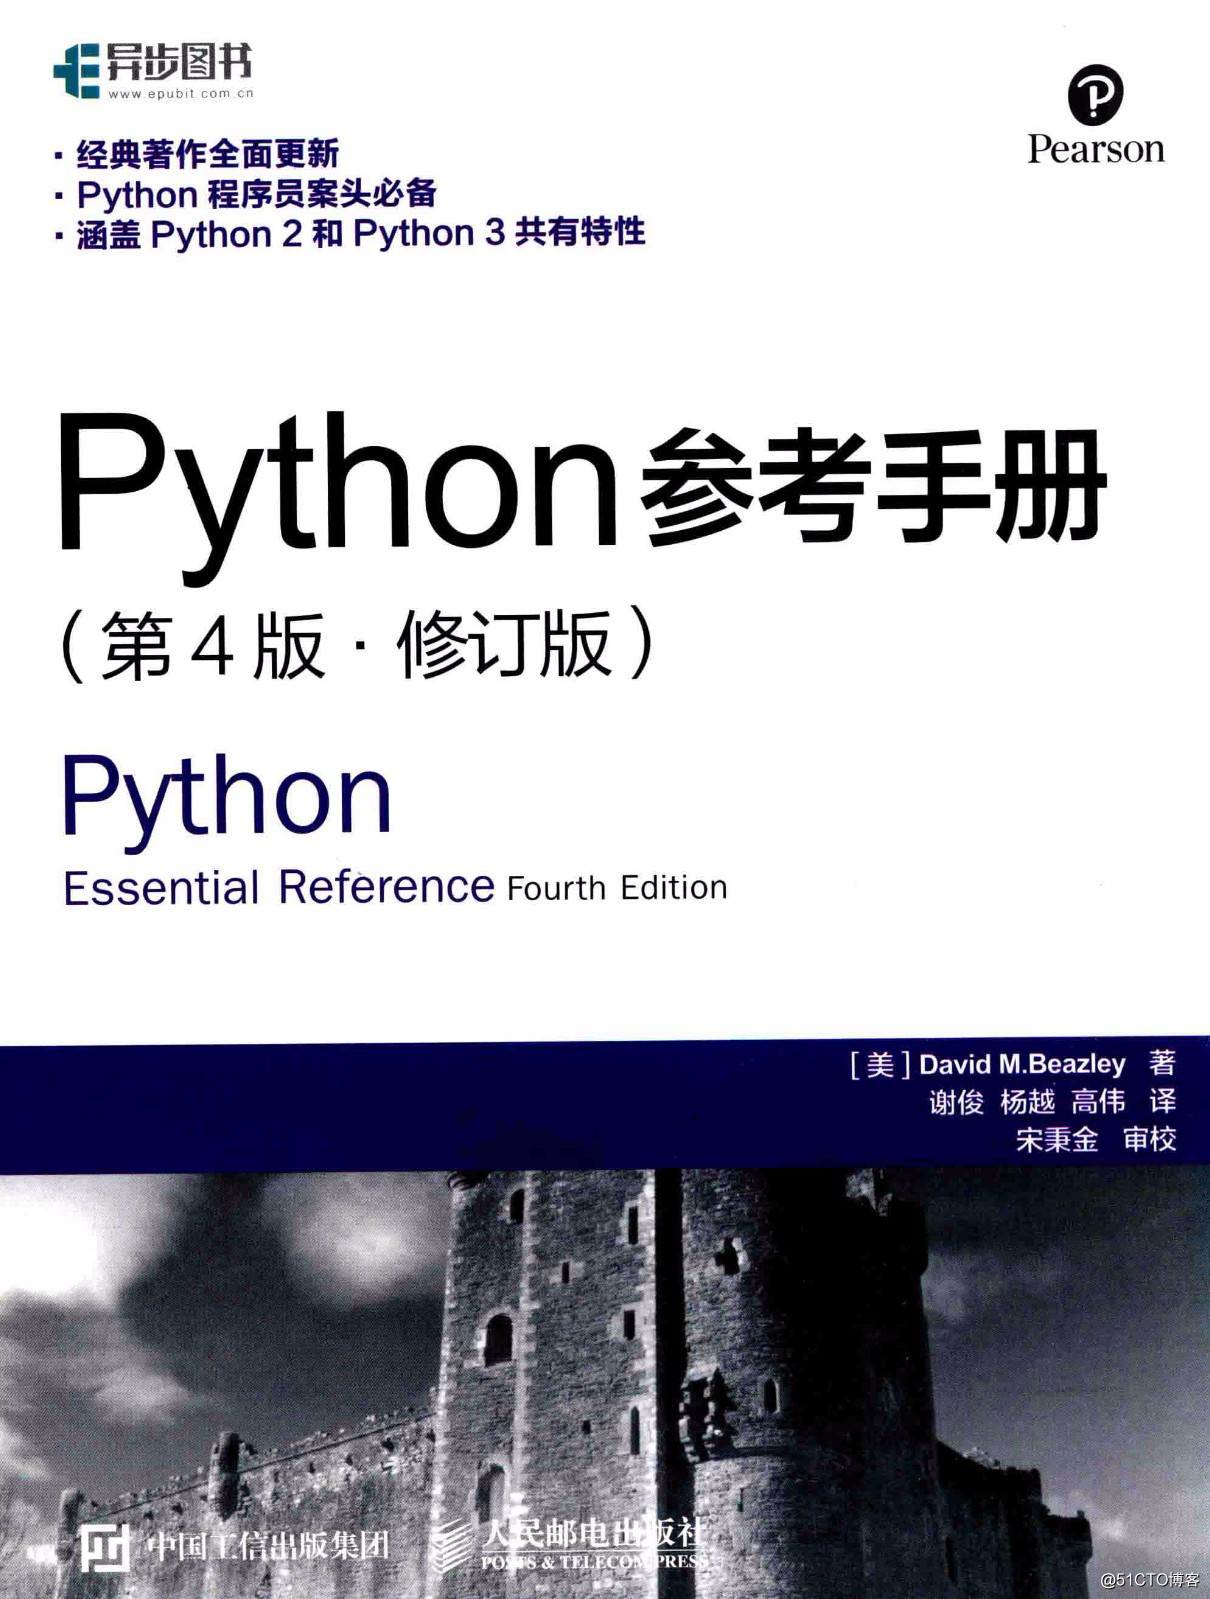 Python參考手冊 第4版高清中文PDF下載